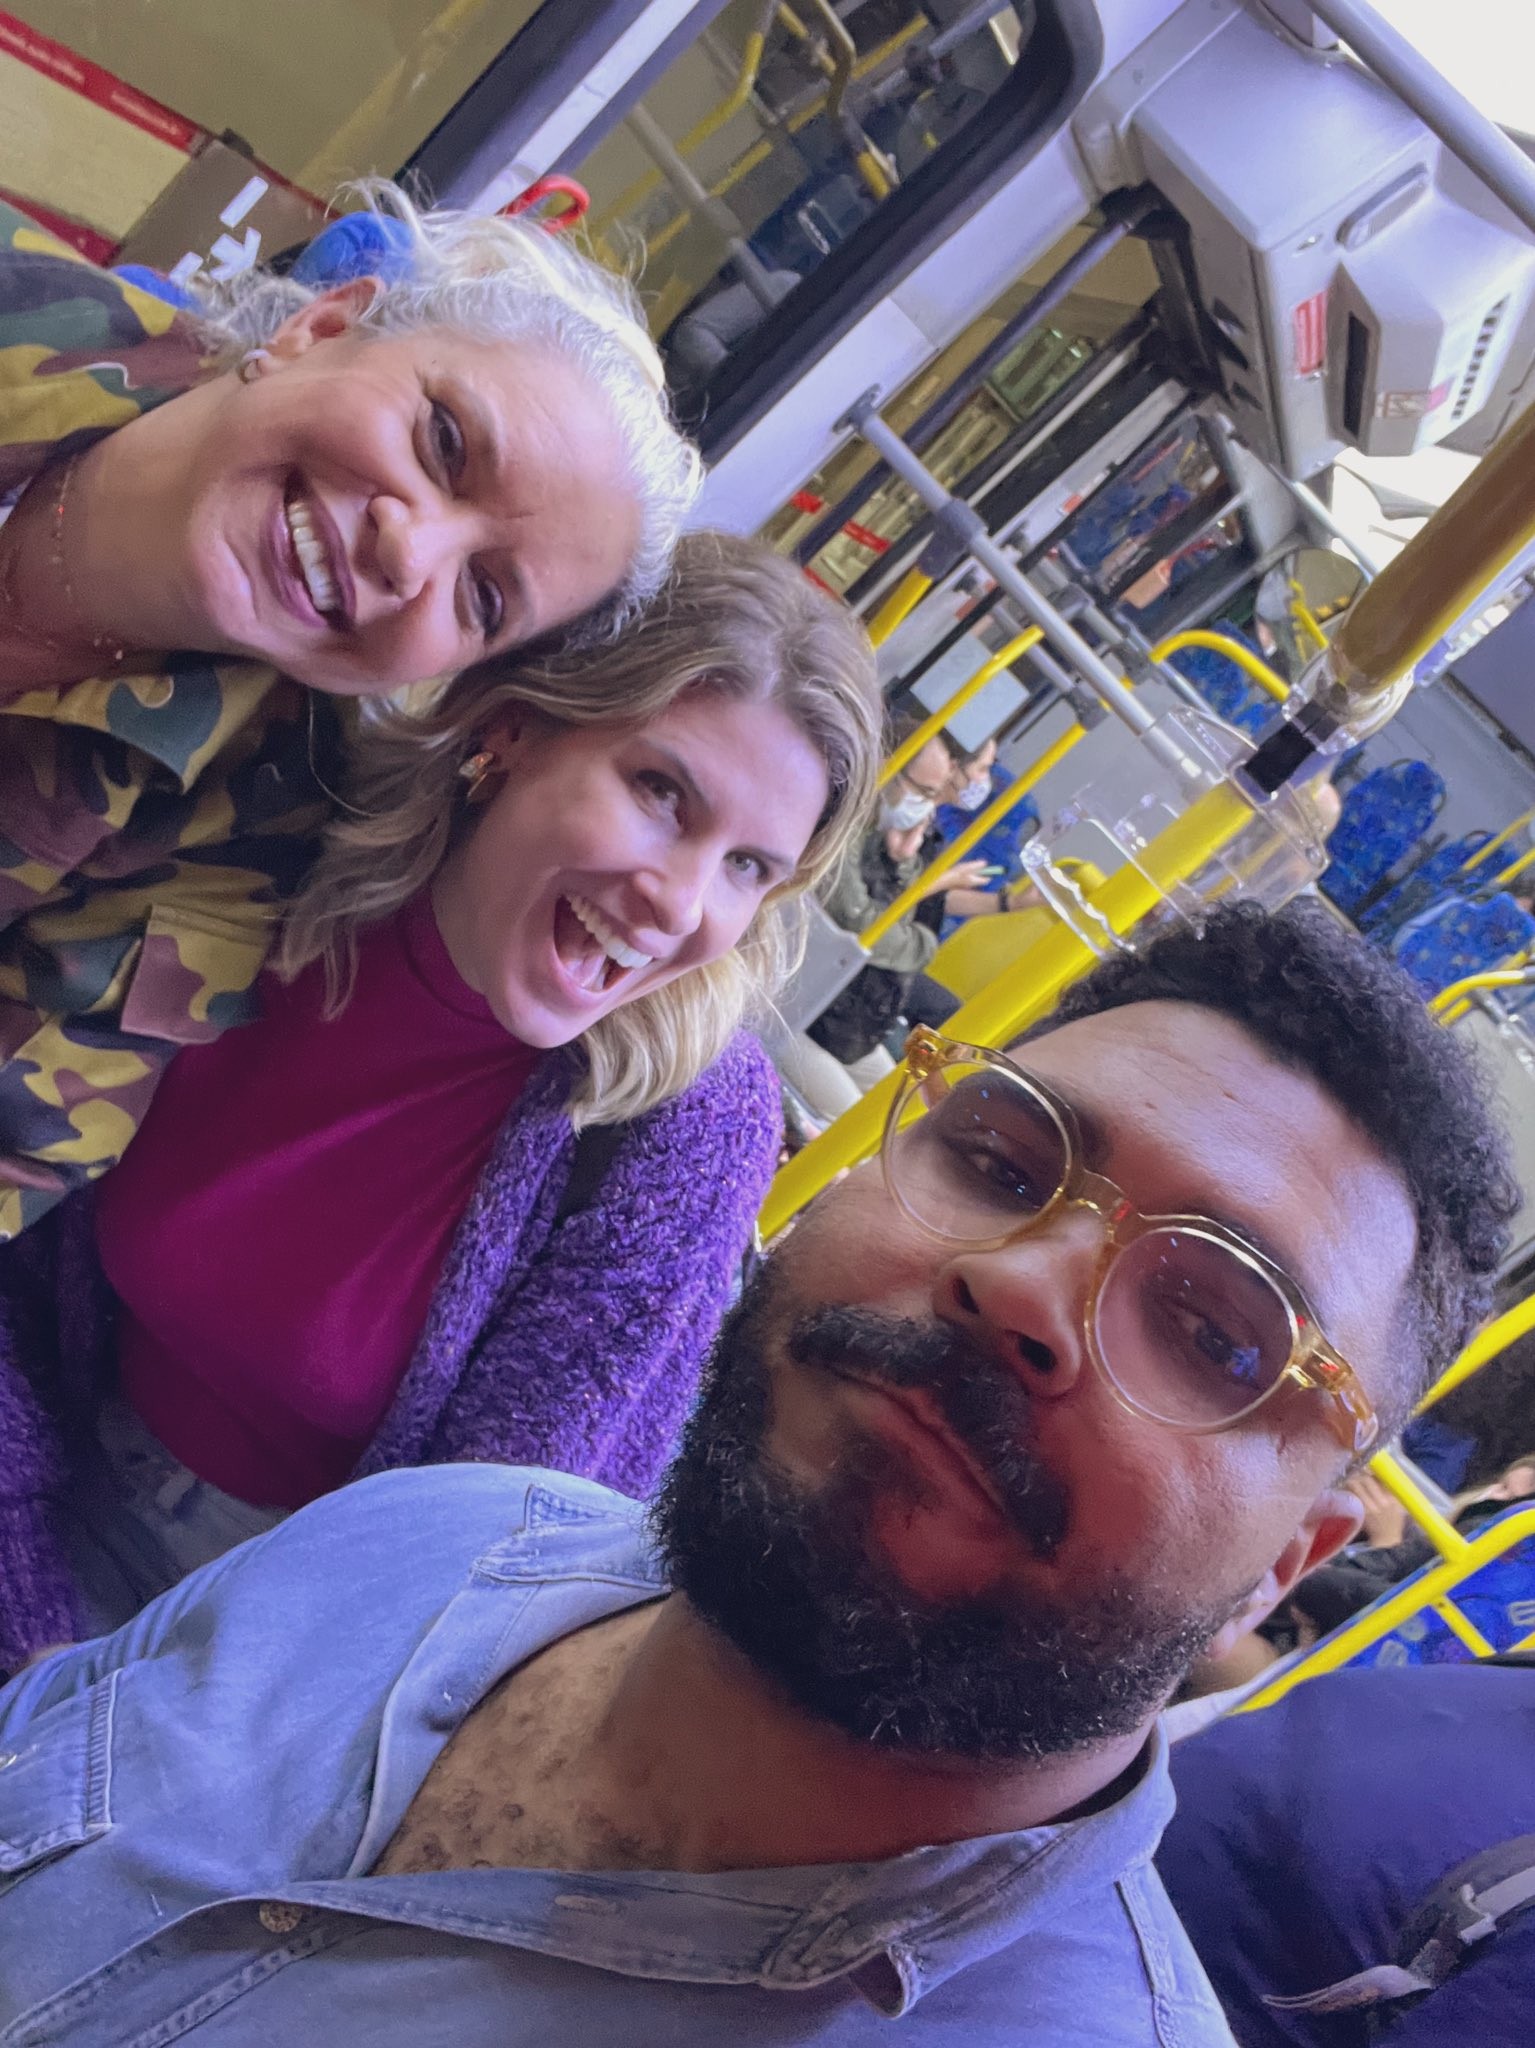 Paulo Vieira faz piada em foto com apresentadoras no ônibus (Foto: Reprodução/Twitter)